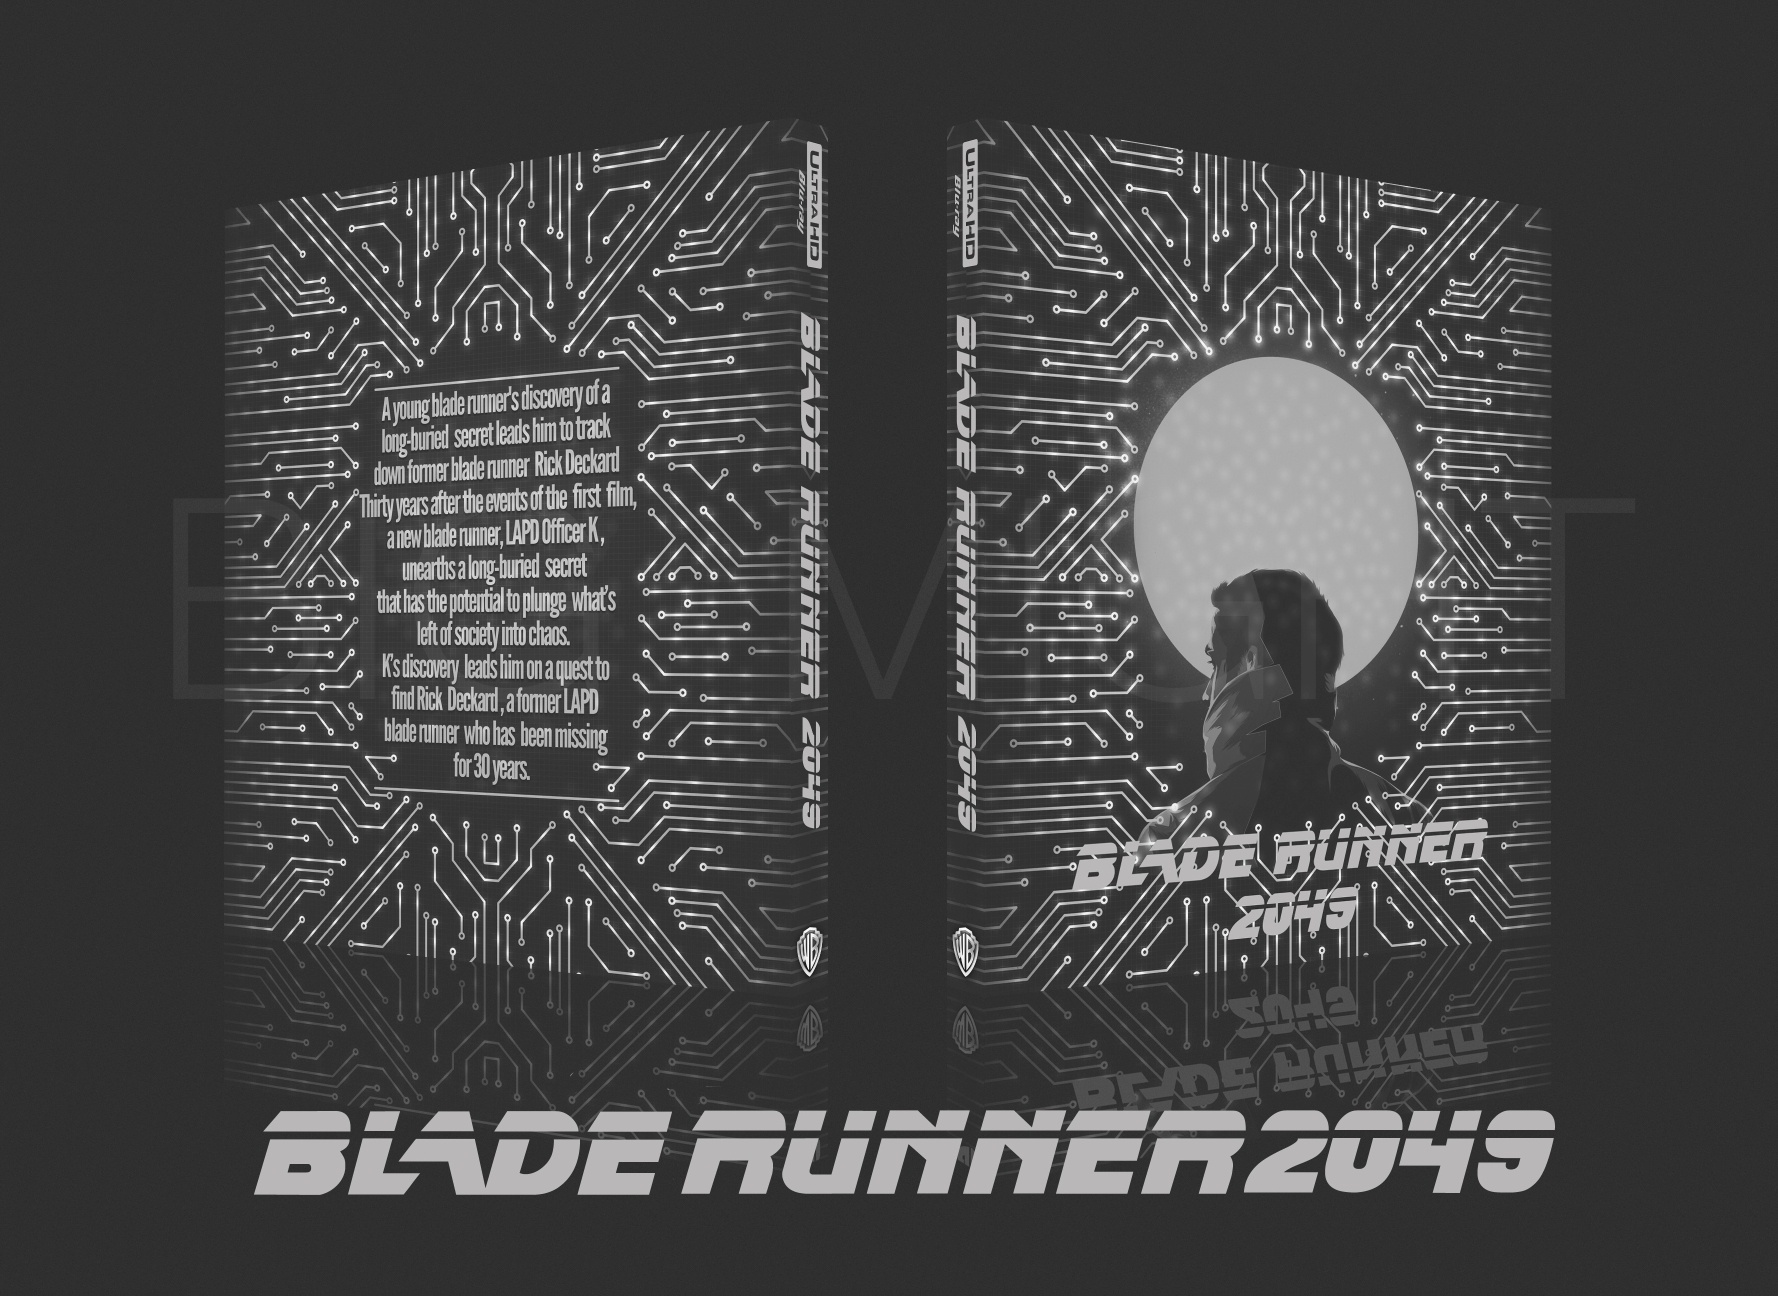 Blade Runner 2049 box cover